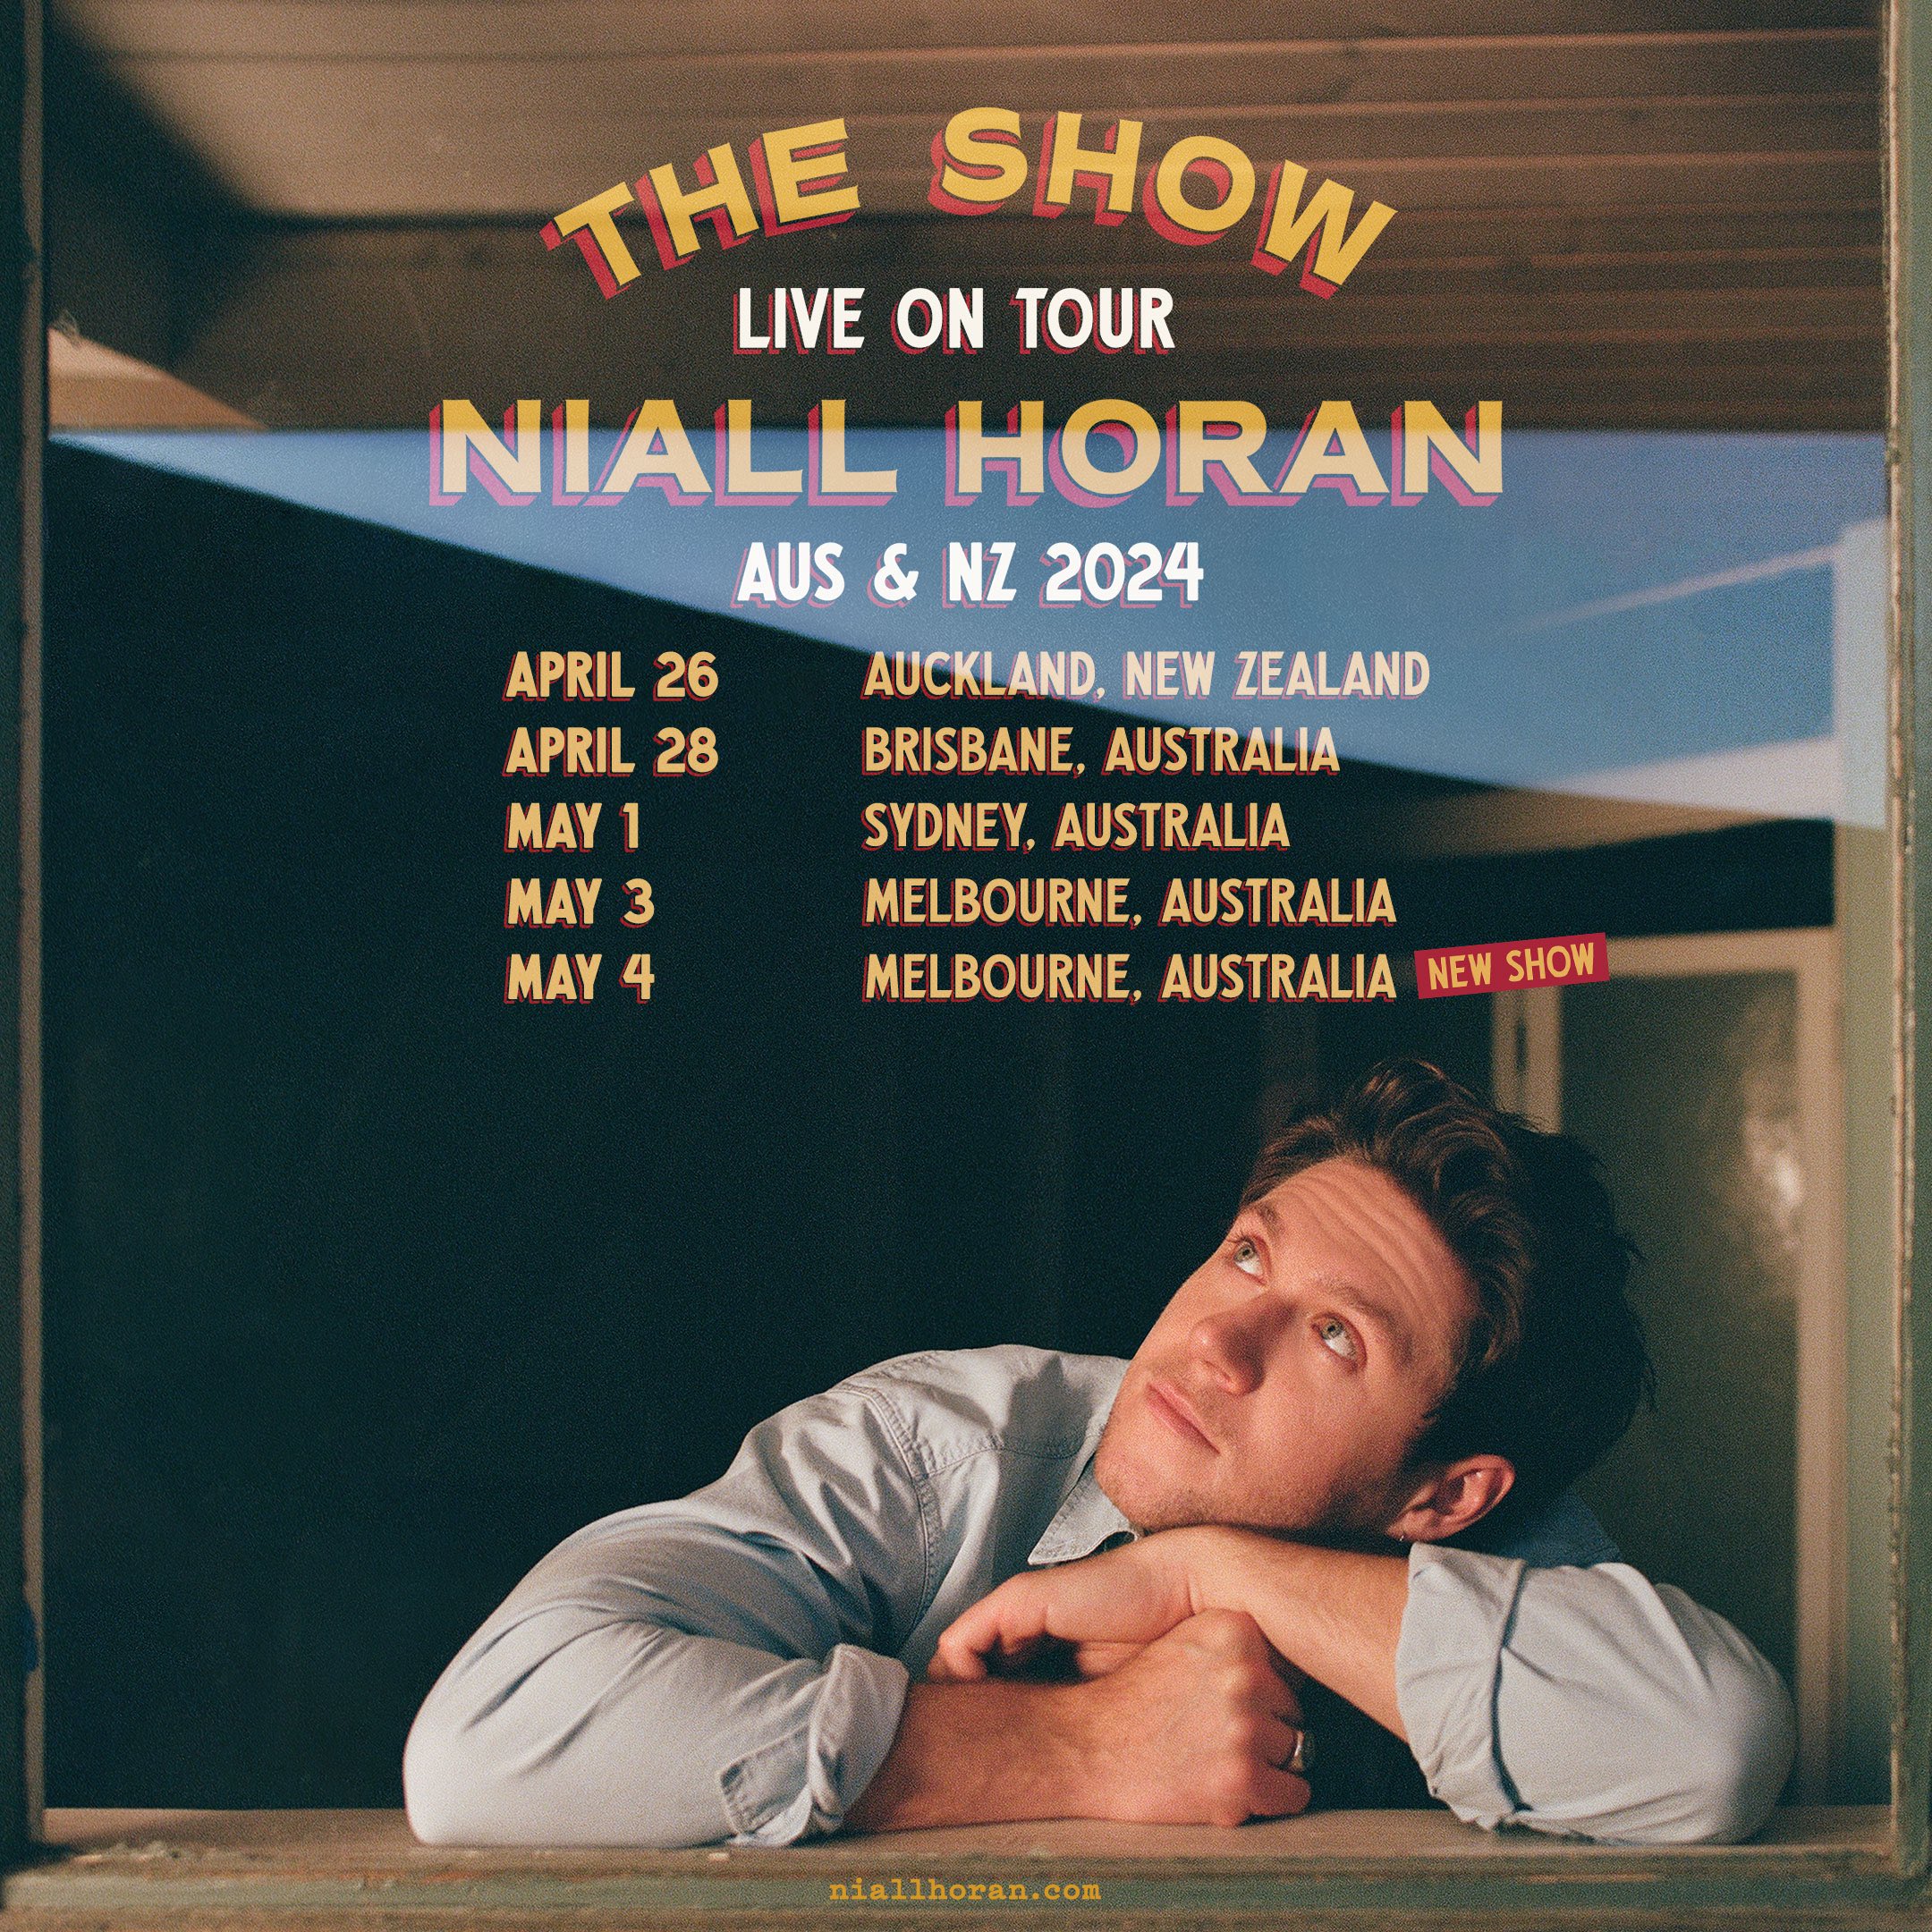 Niall Horan social media info